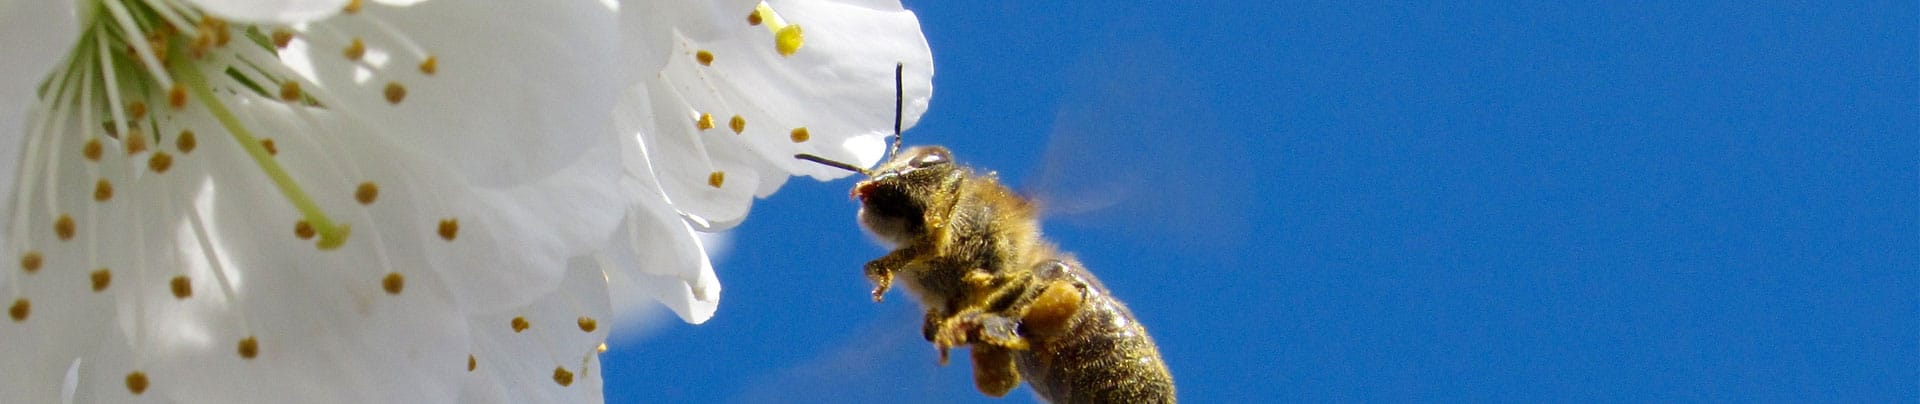 Bee getting pollen - Colorado Beekeepers Association